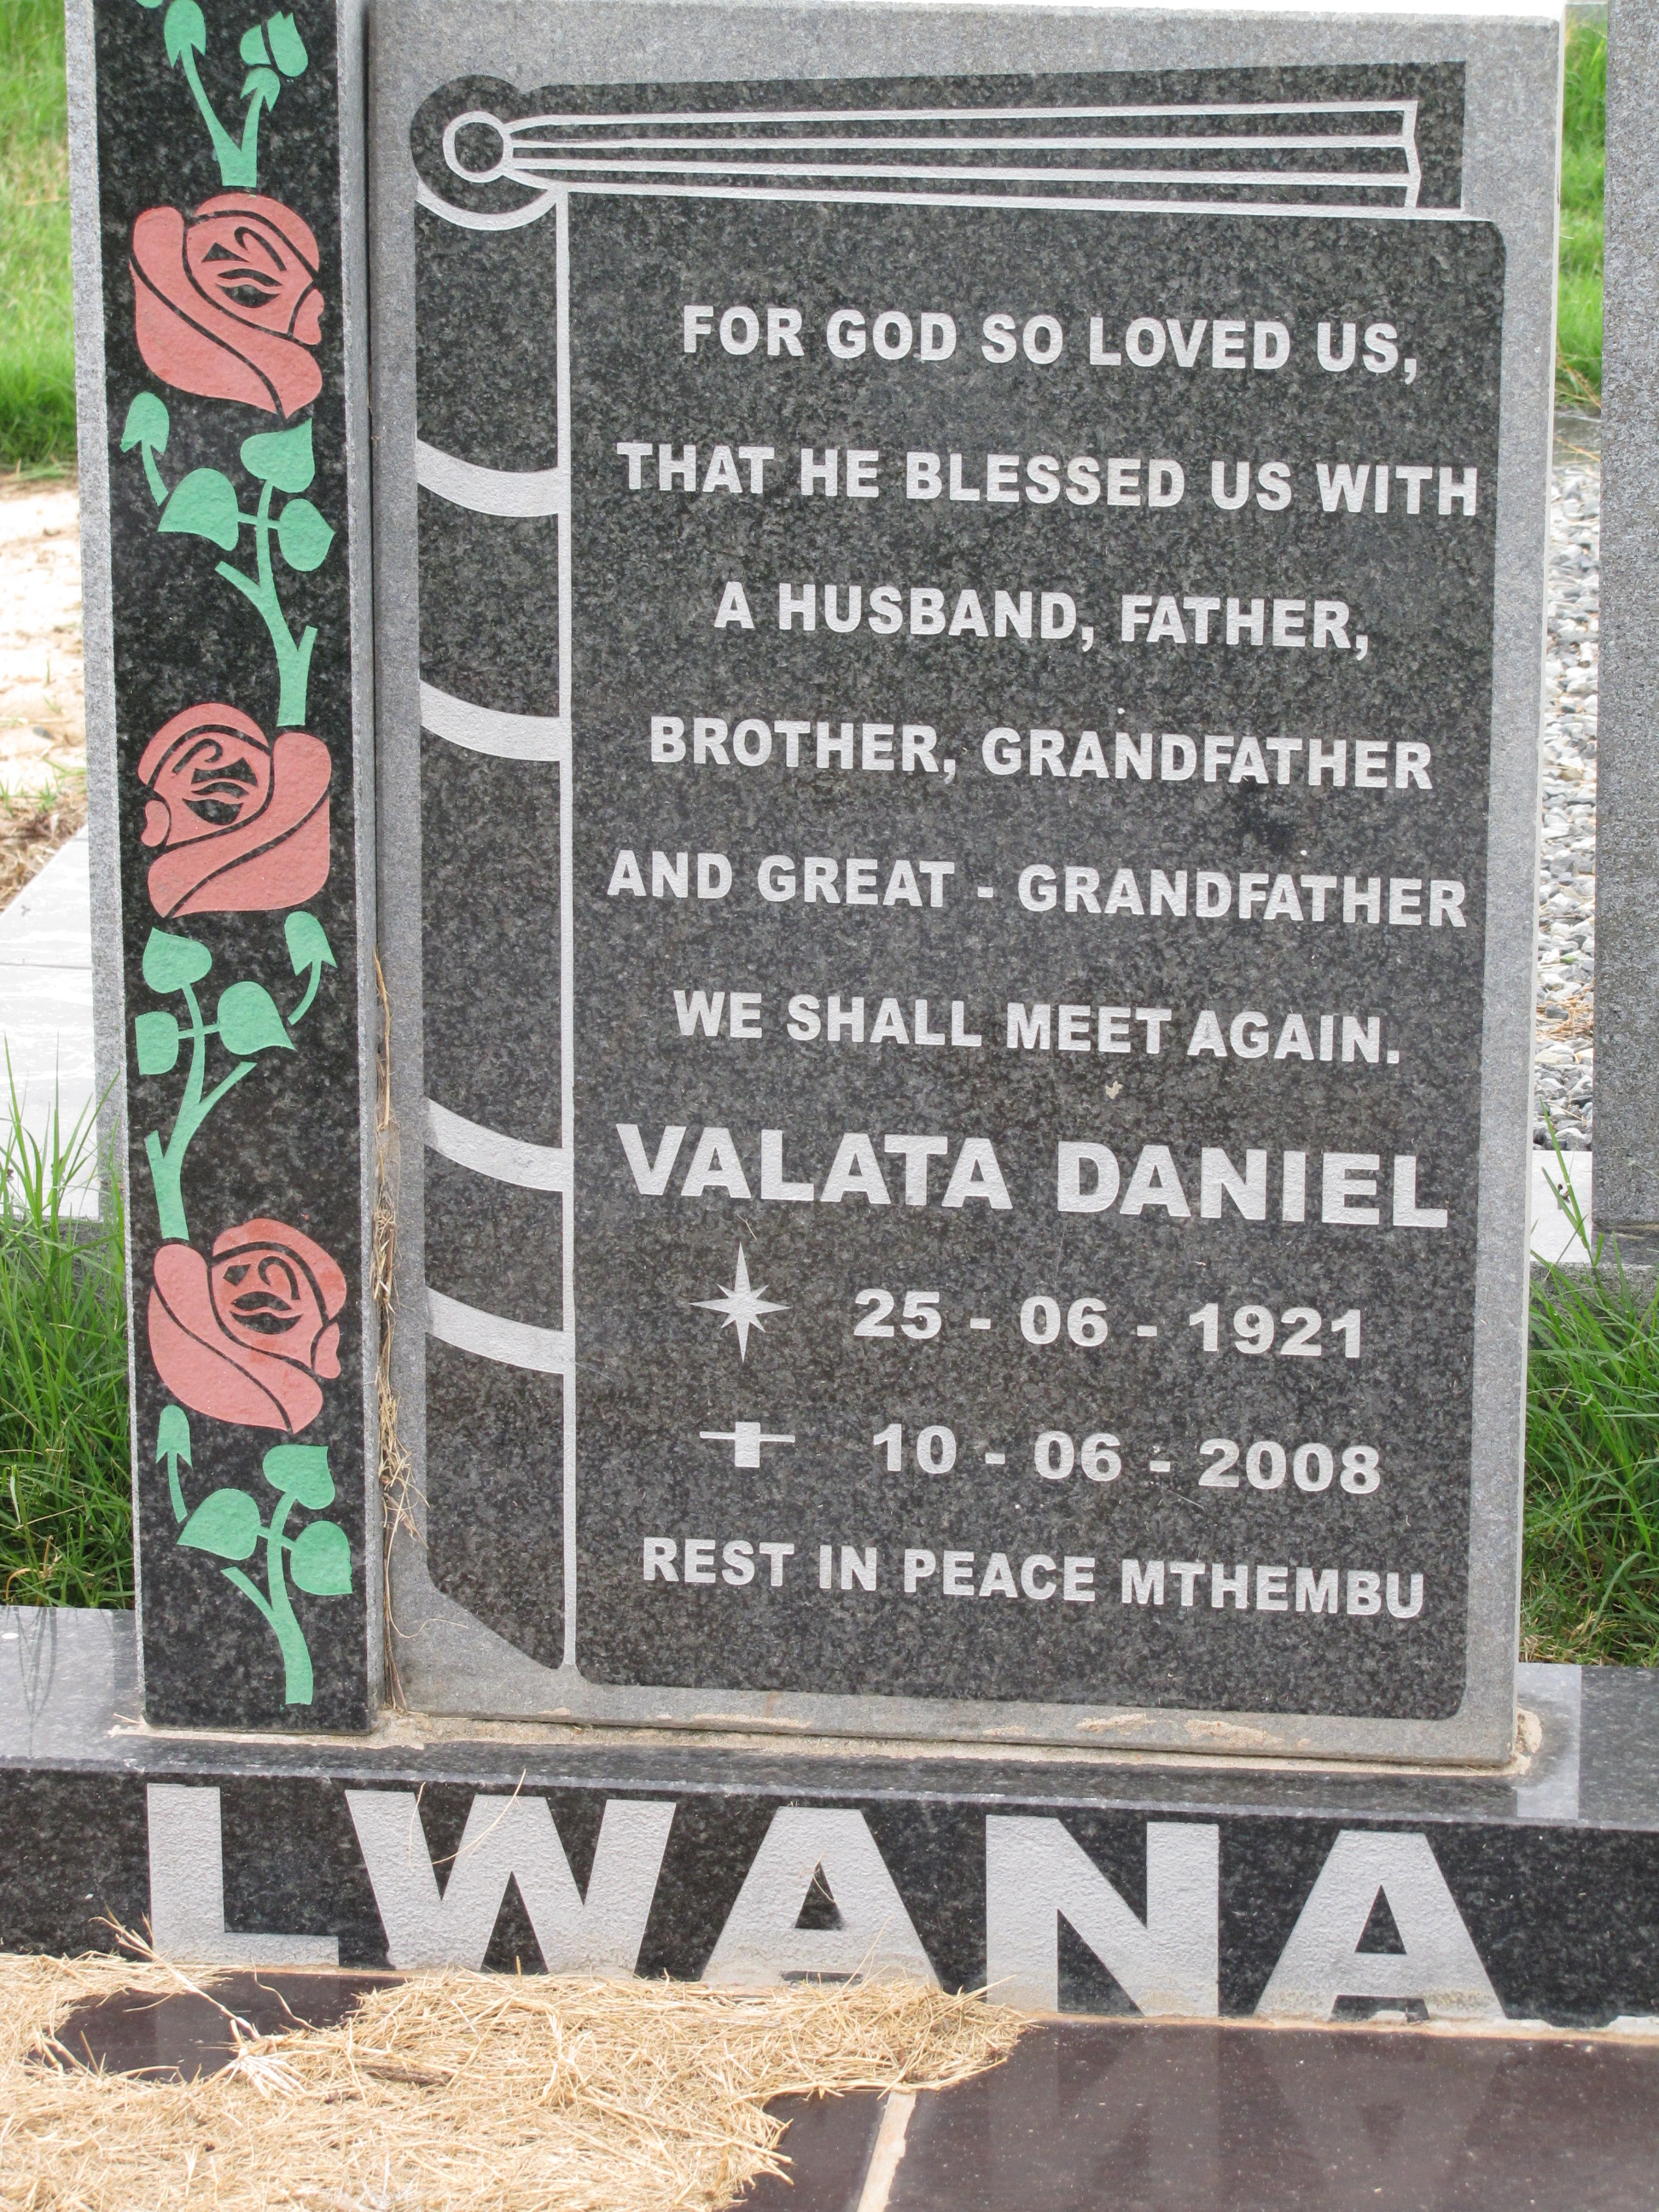 LWANA Valata Daniel 1921-2008.JPG